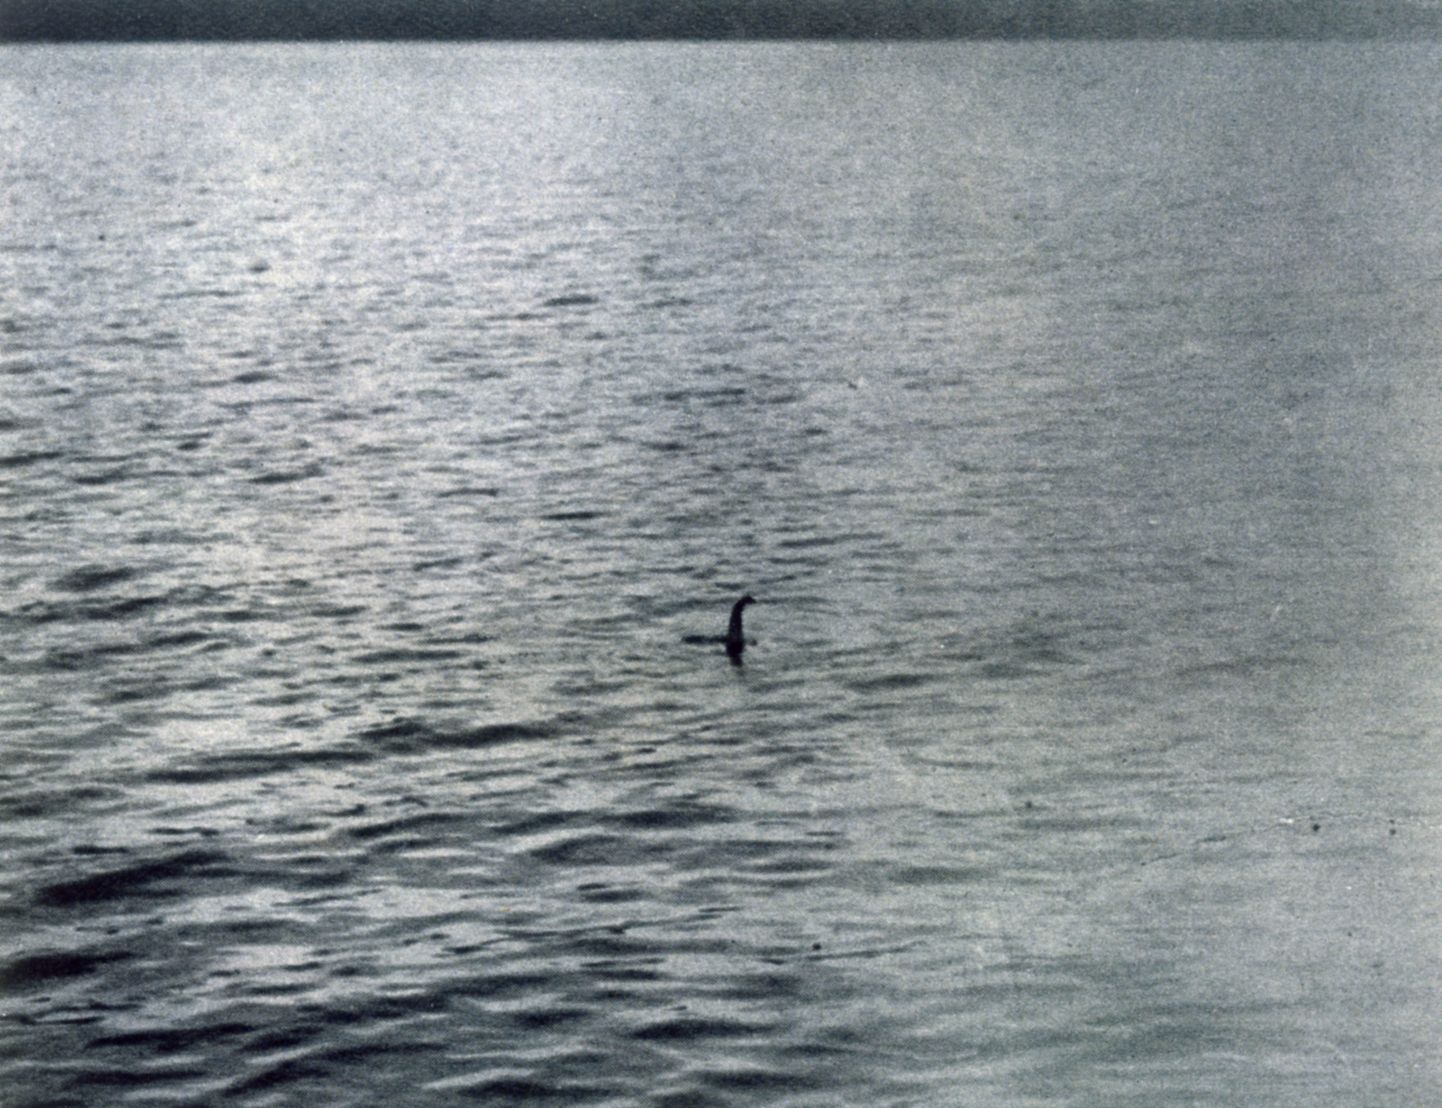 Kõige kuulsam foto väidetavast Loch Nessi koletisest, mille tegi 19. aprillil 1934 London günekoloog Robert Kenneth Wilson